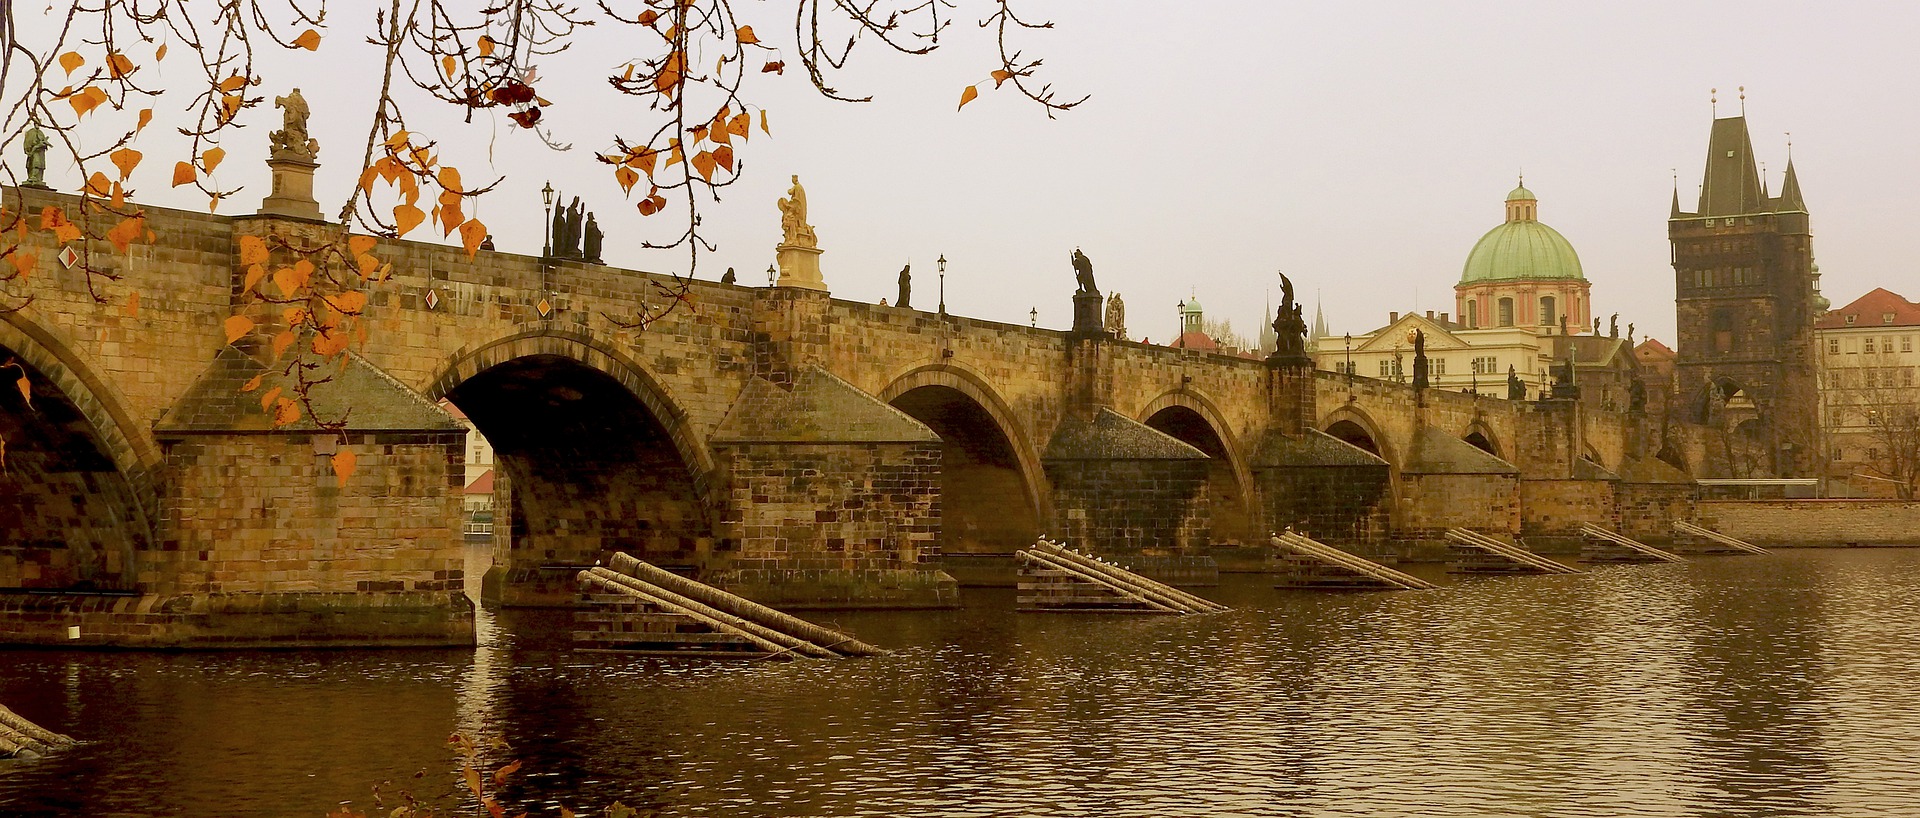 ما هي أهم المعالم السياحية في براغ و كيف تصل إليها؟